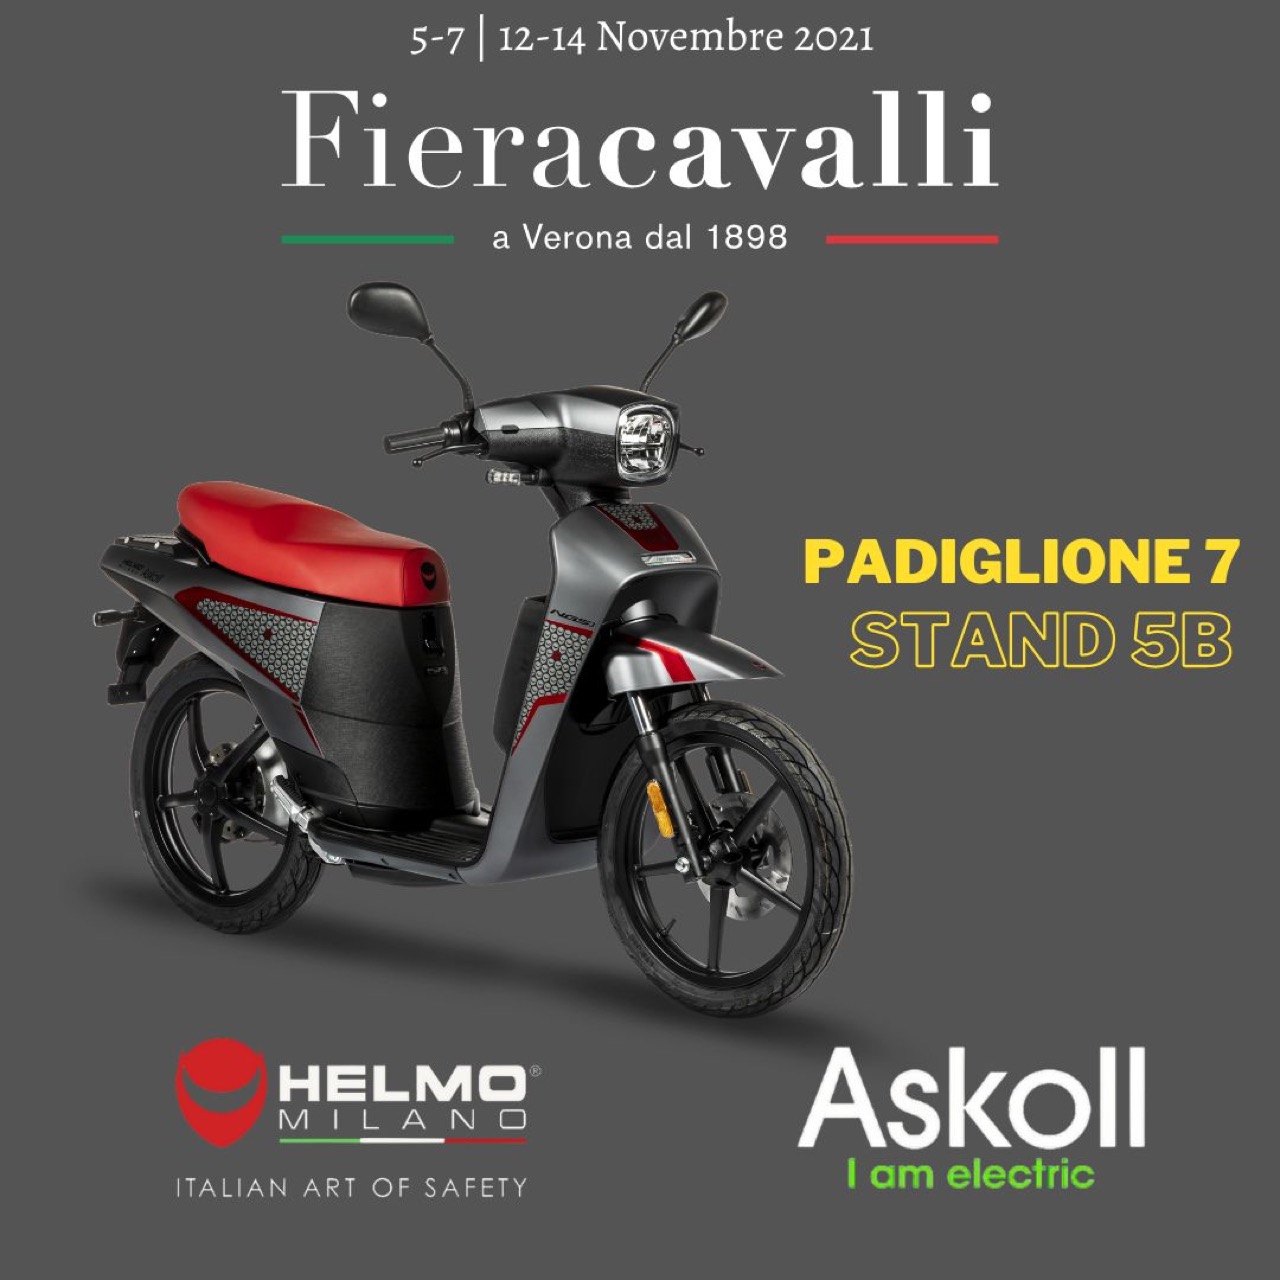 Askoll NGS3 van Helmo Milano uitgelicht op Fieracavalli 2021